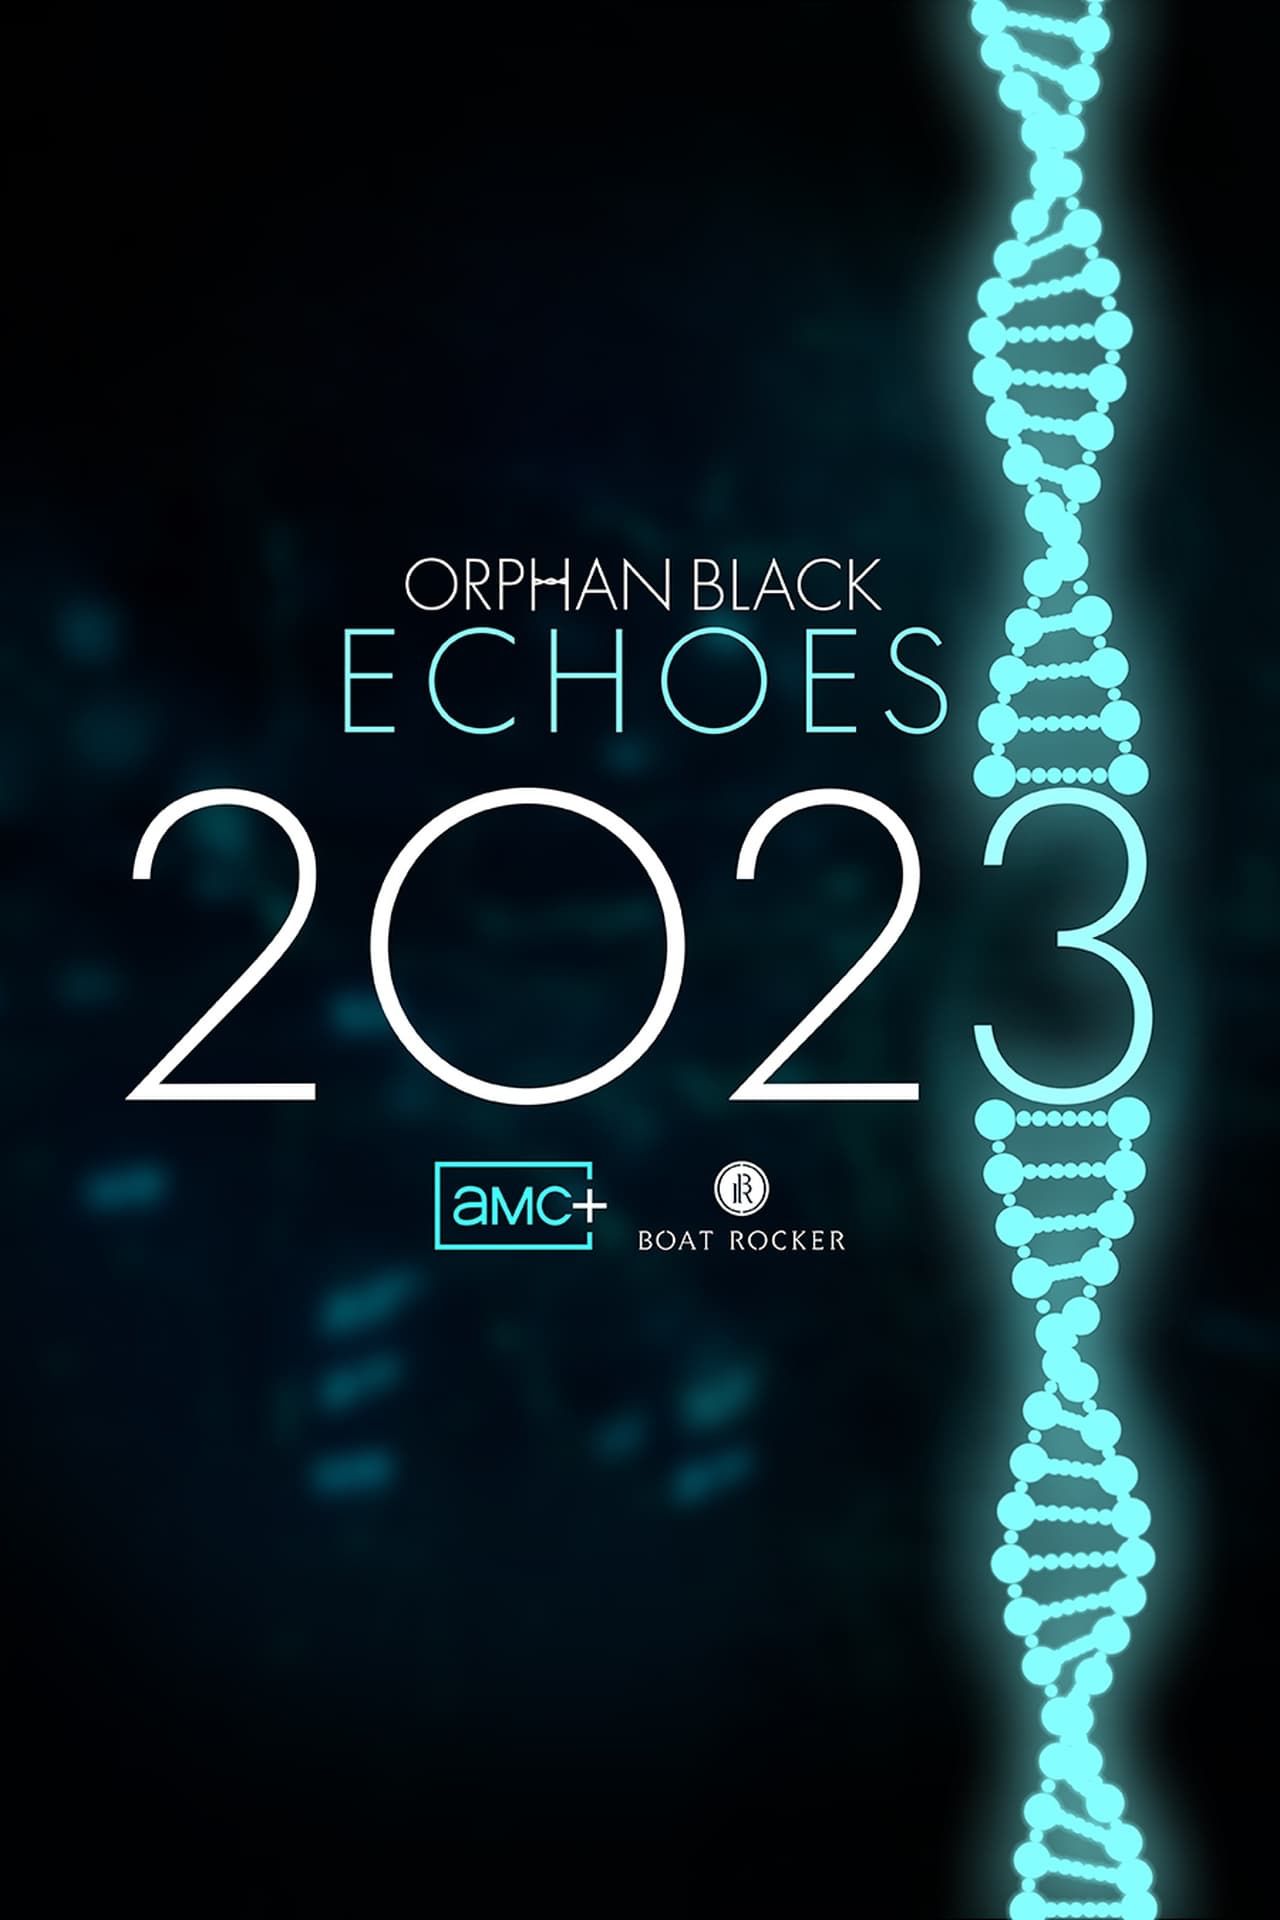 Pôster de TV Orphan Black Echoes